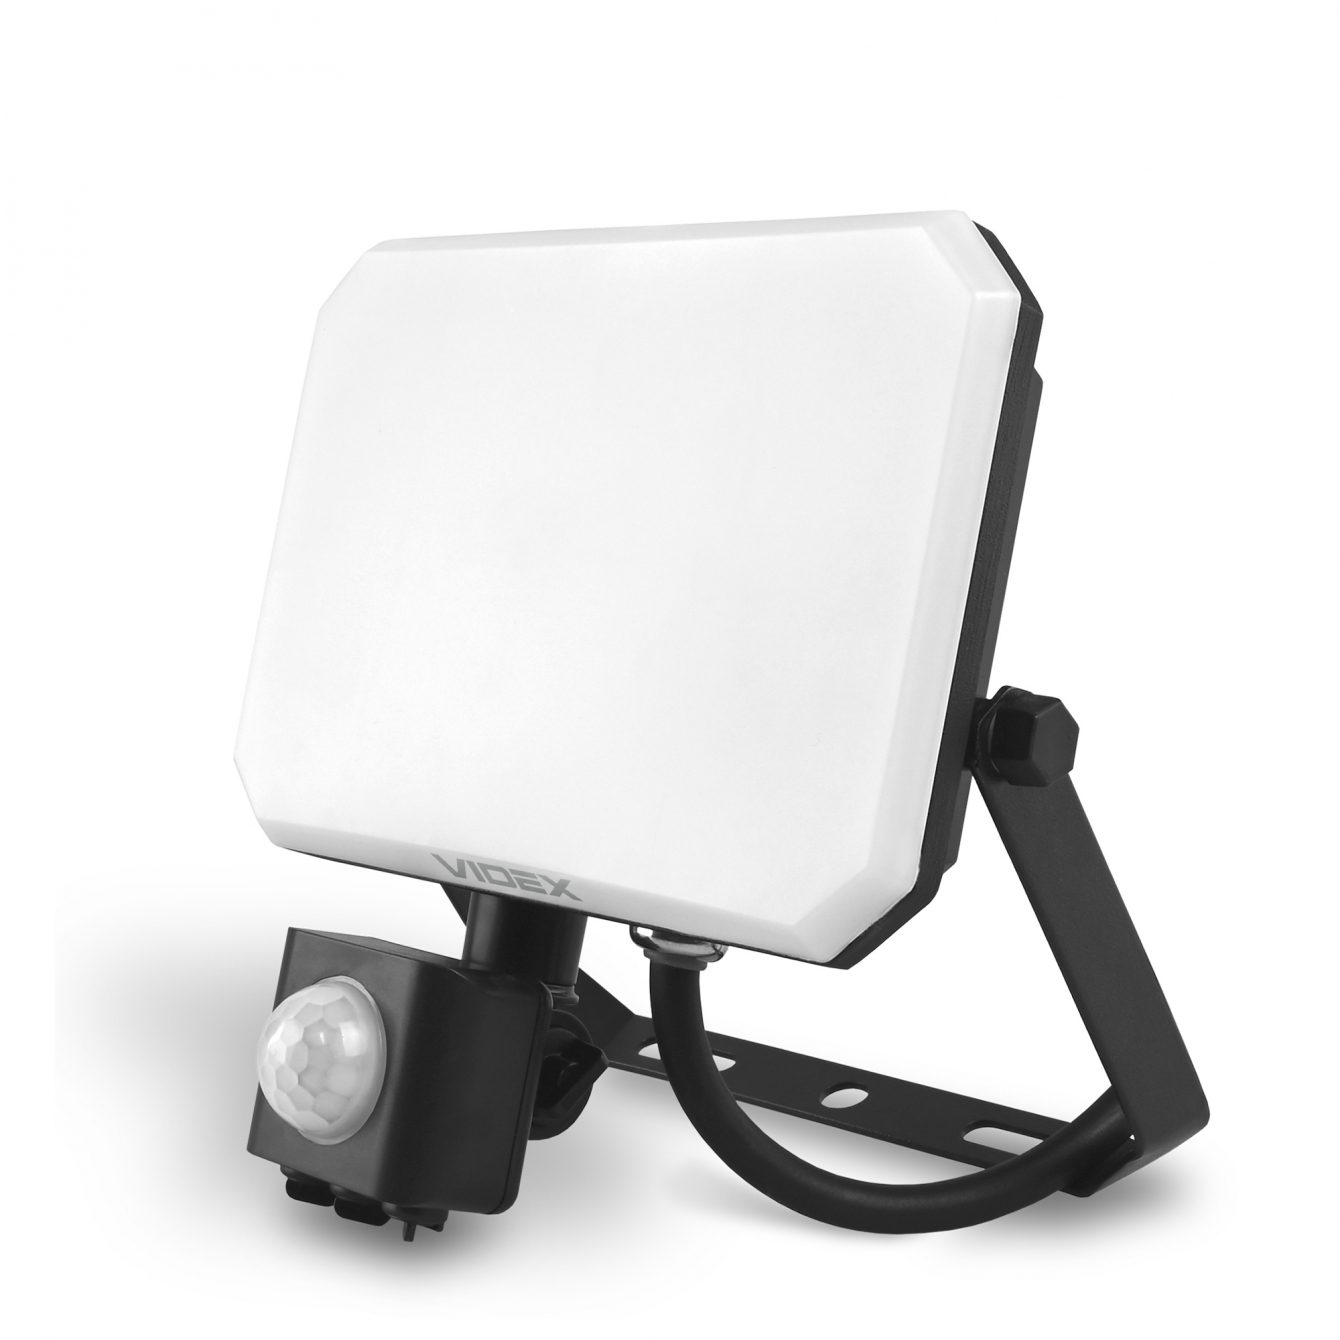 Прожектор с датч/движения и освещенности Videx F3 30W 5000K 2850lm 110° IP65 